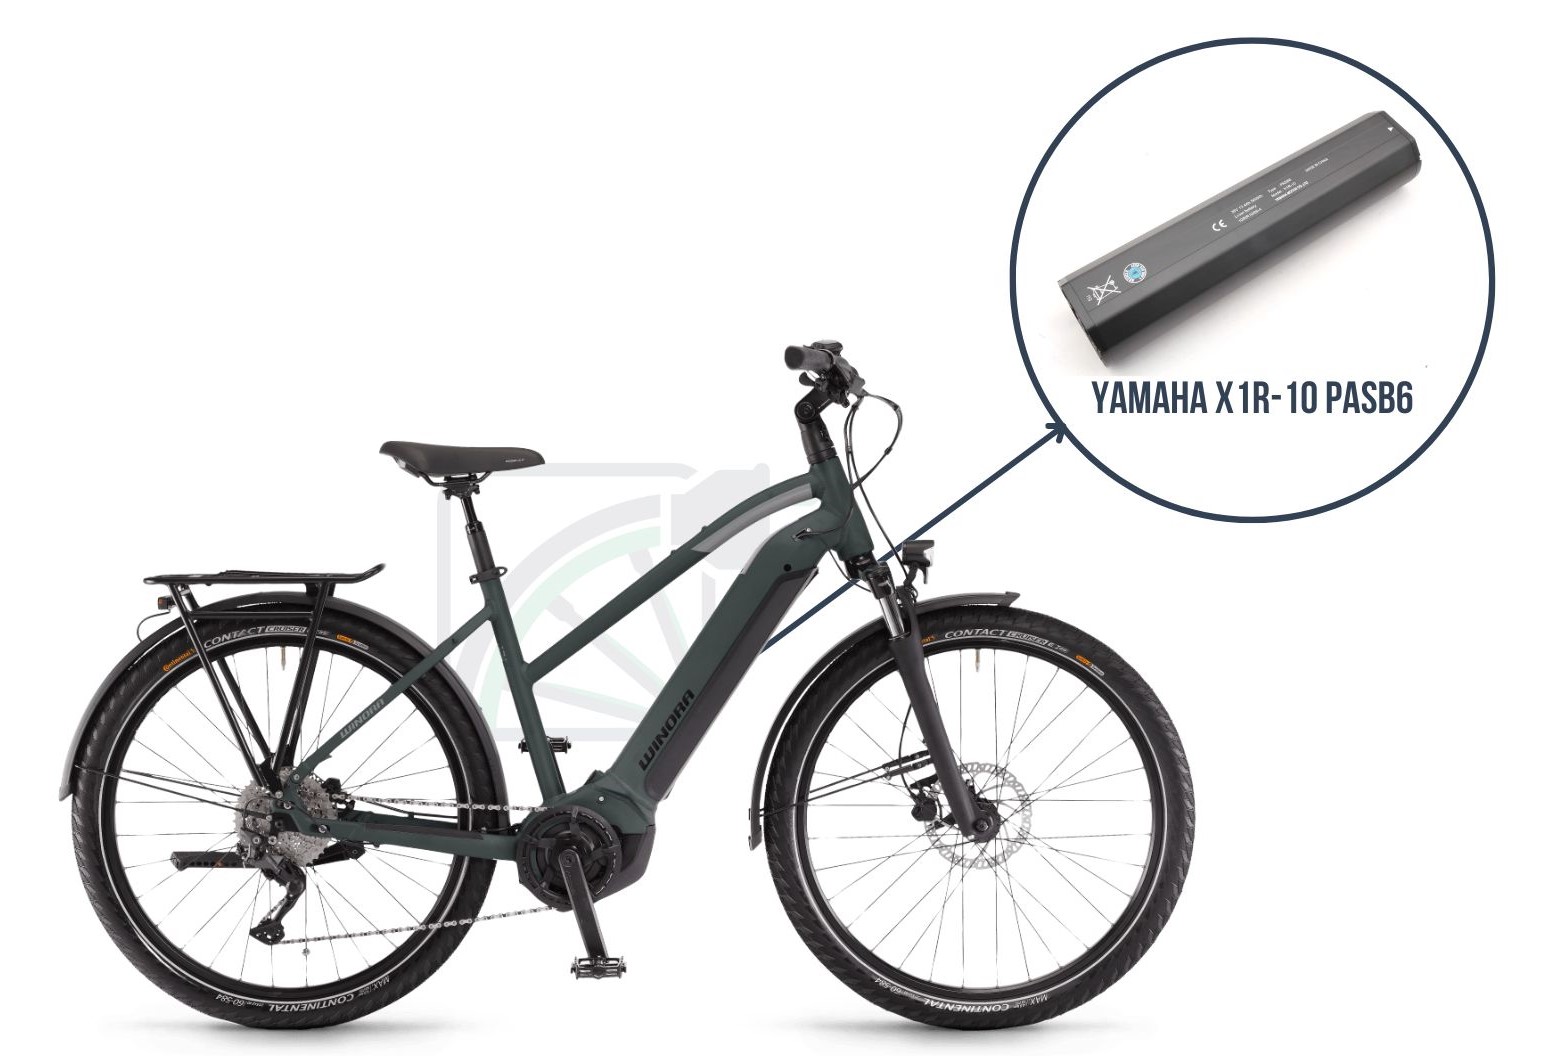 De Winor Yucatan iN7f met daarbij uitgelicht welke batterij deze fiets gebruikt. Dit is namelijk de Yamaha X1R-10 PASB6